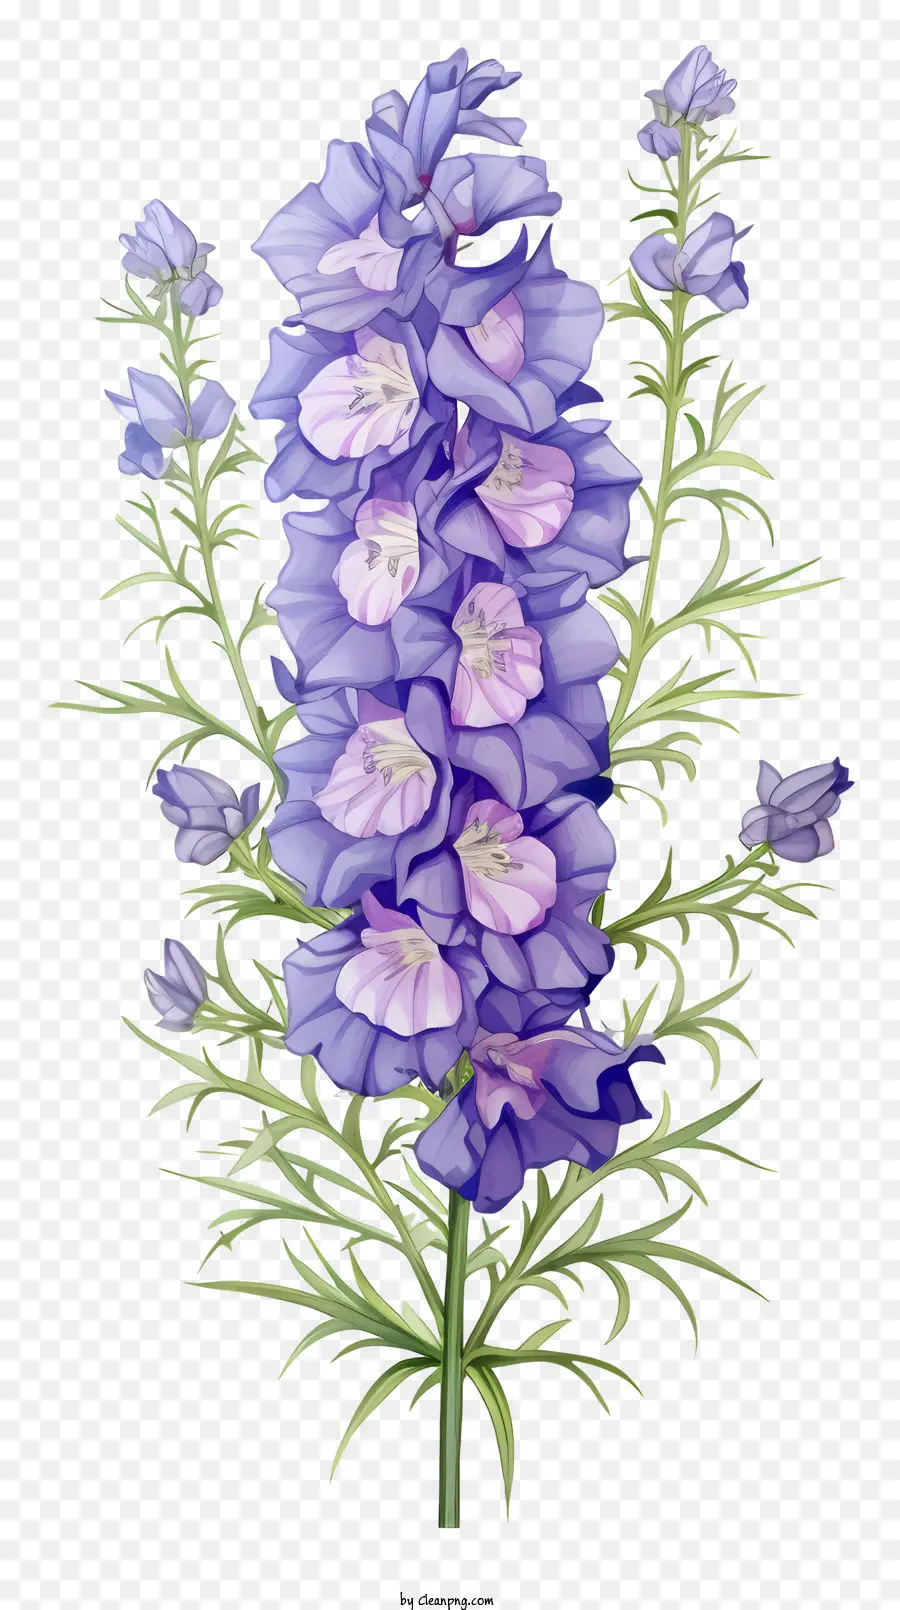 Blaue Blume - Blaue Blume mit lila Blütenblättern und weißem Zentrum